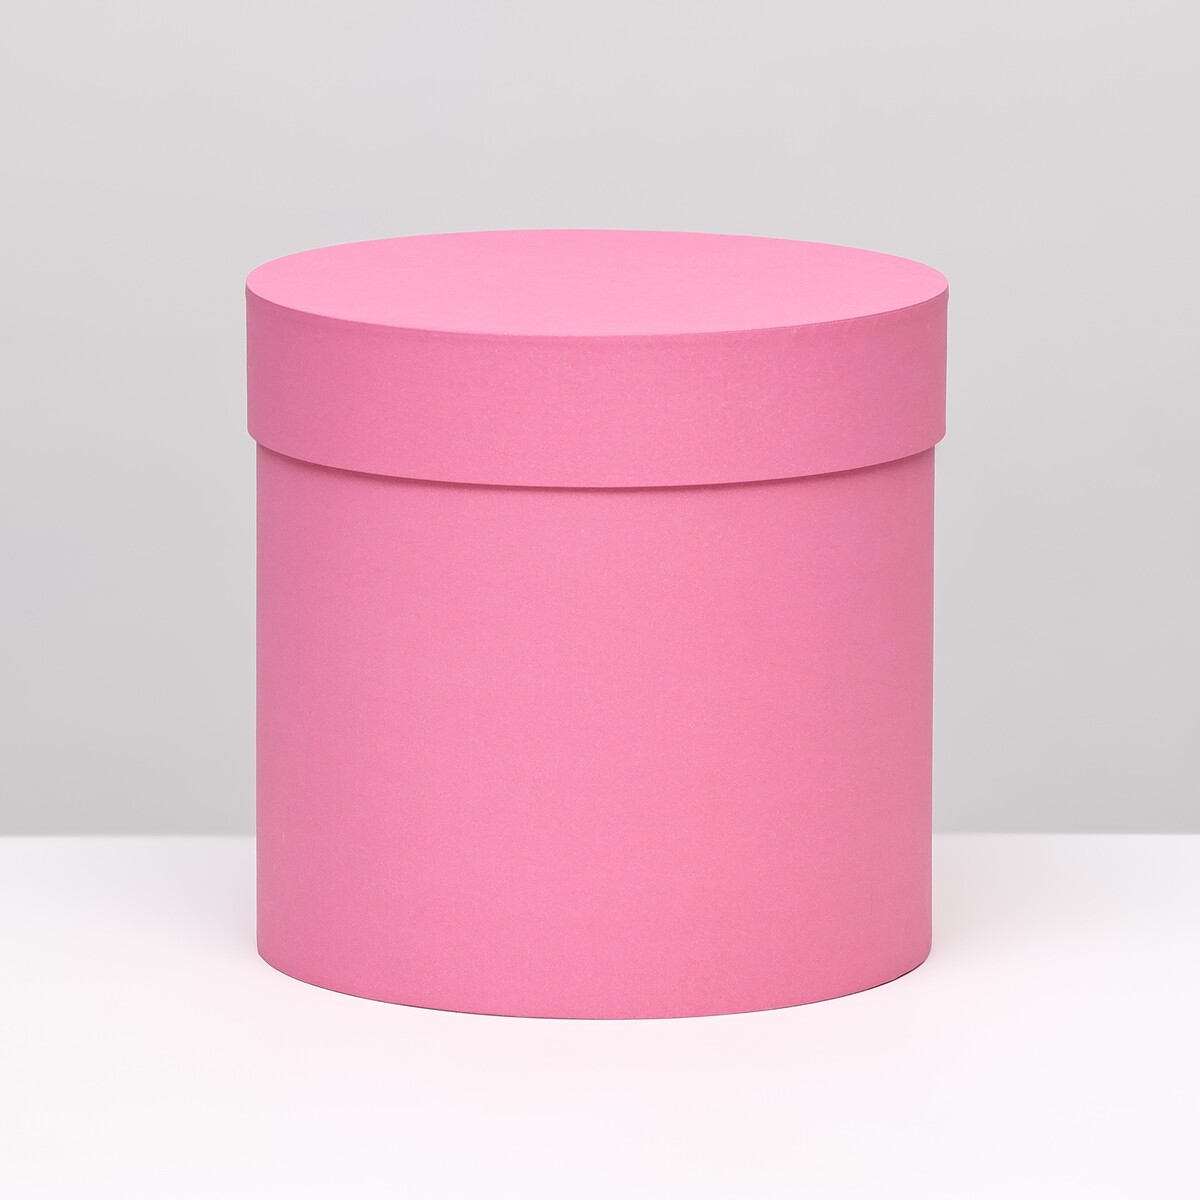 Шляпная коробка розовая, 18 х 18 см шляпная коробка розовая 18 х 18 см